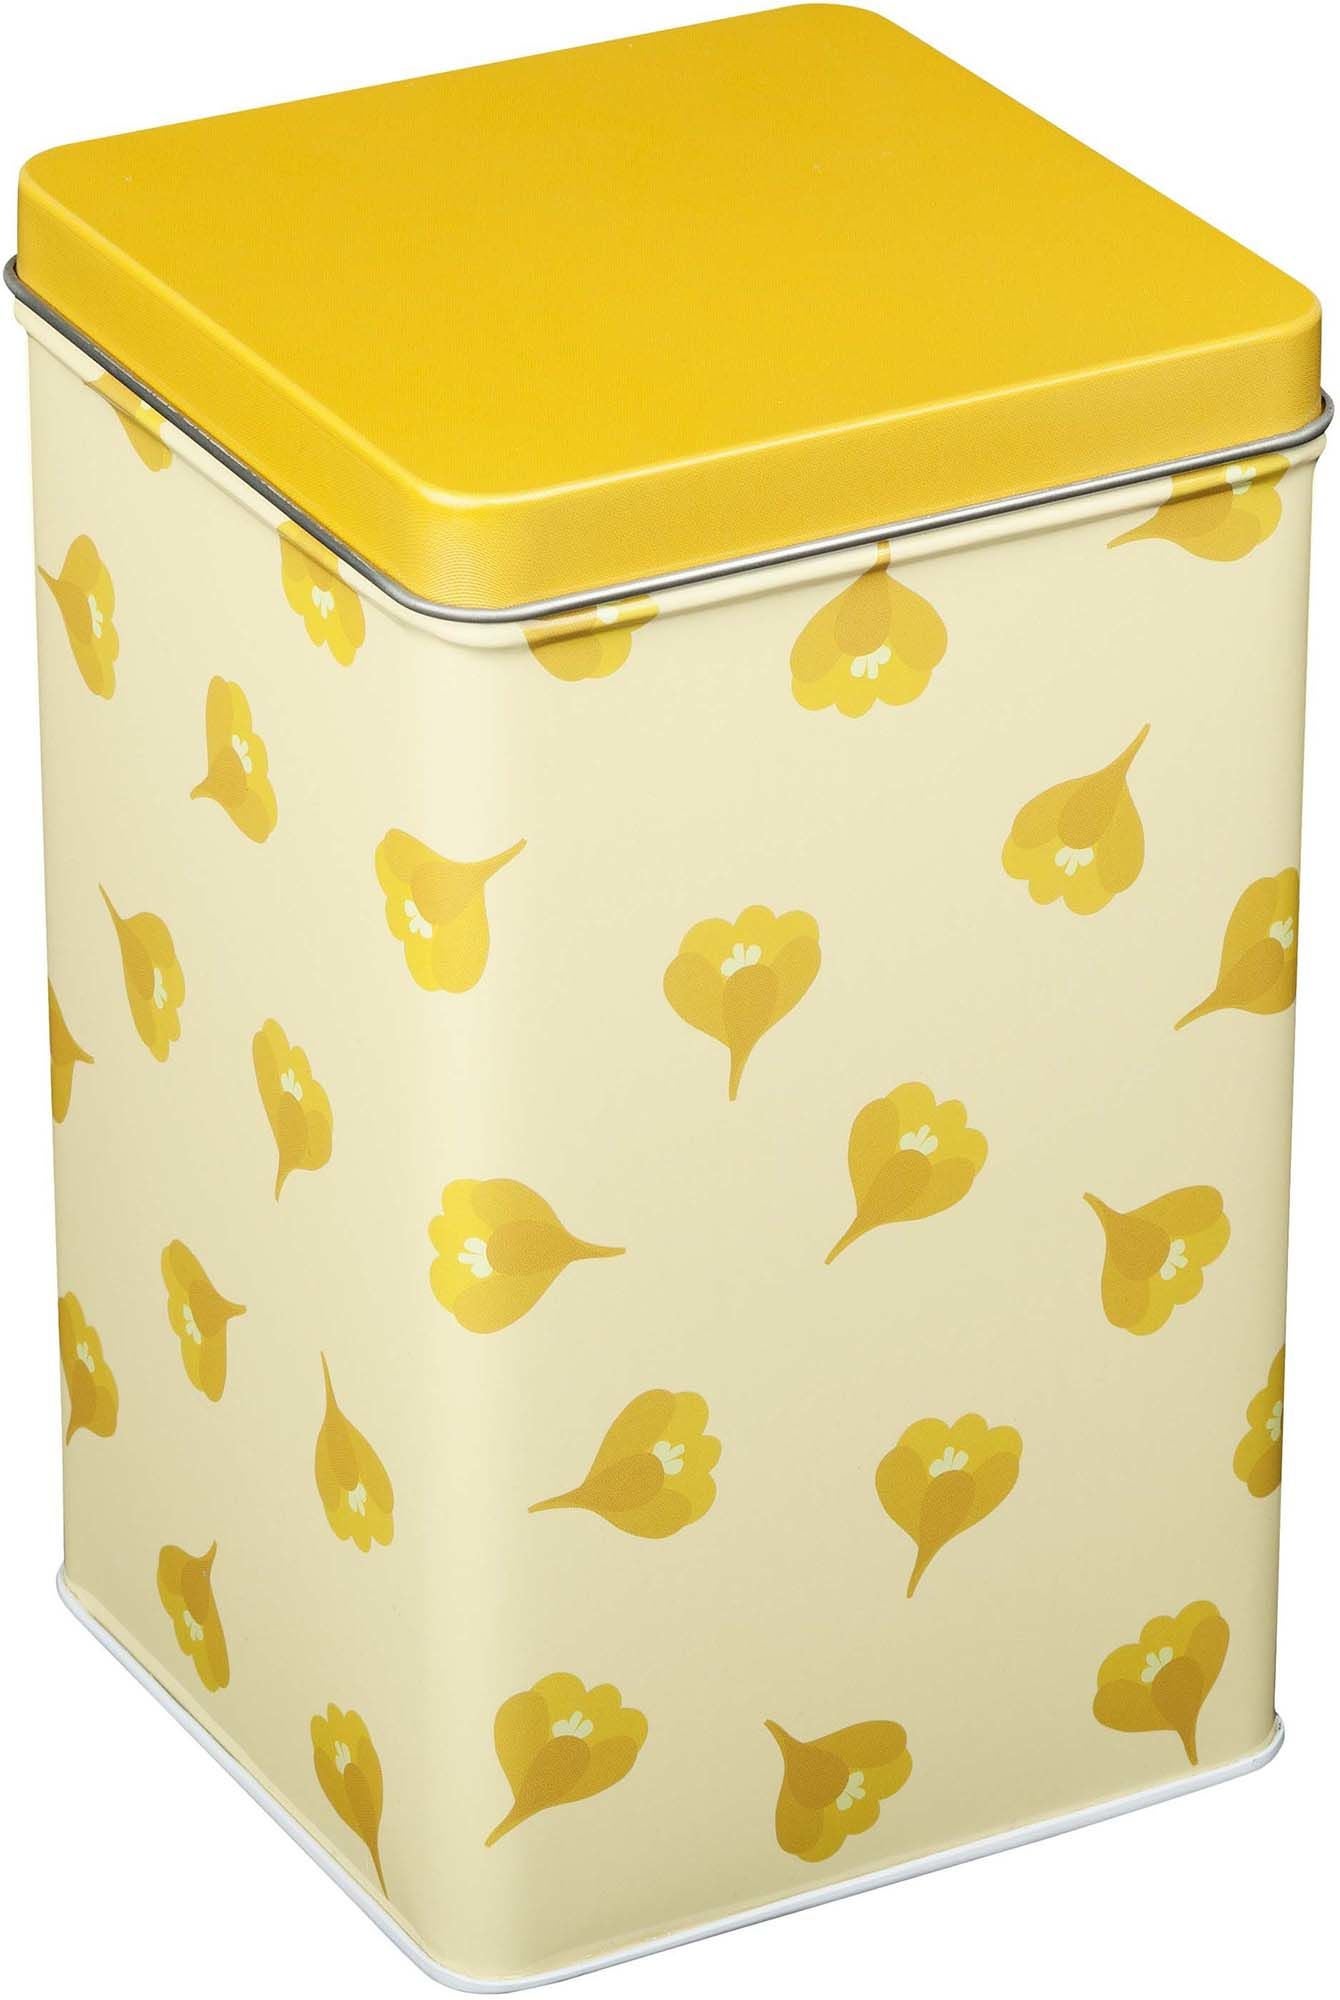 Blafre Hohe Kofferbox Krokus, Gelb von Blafre